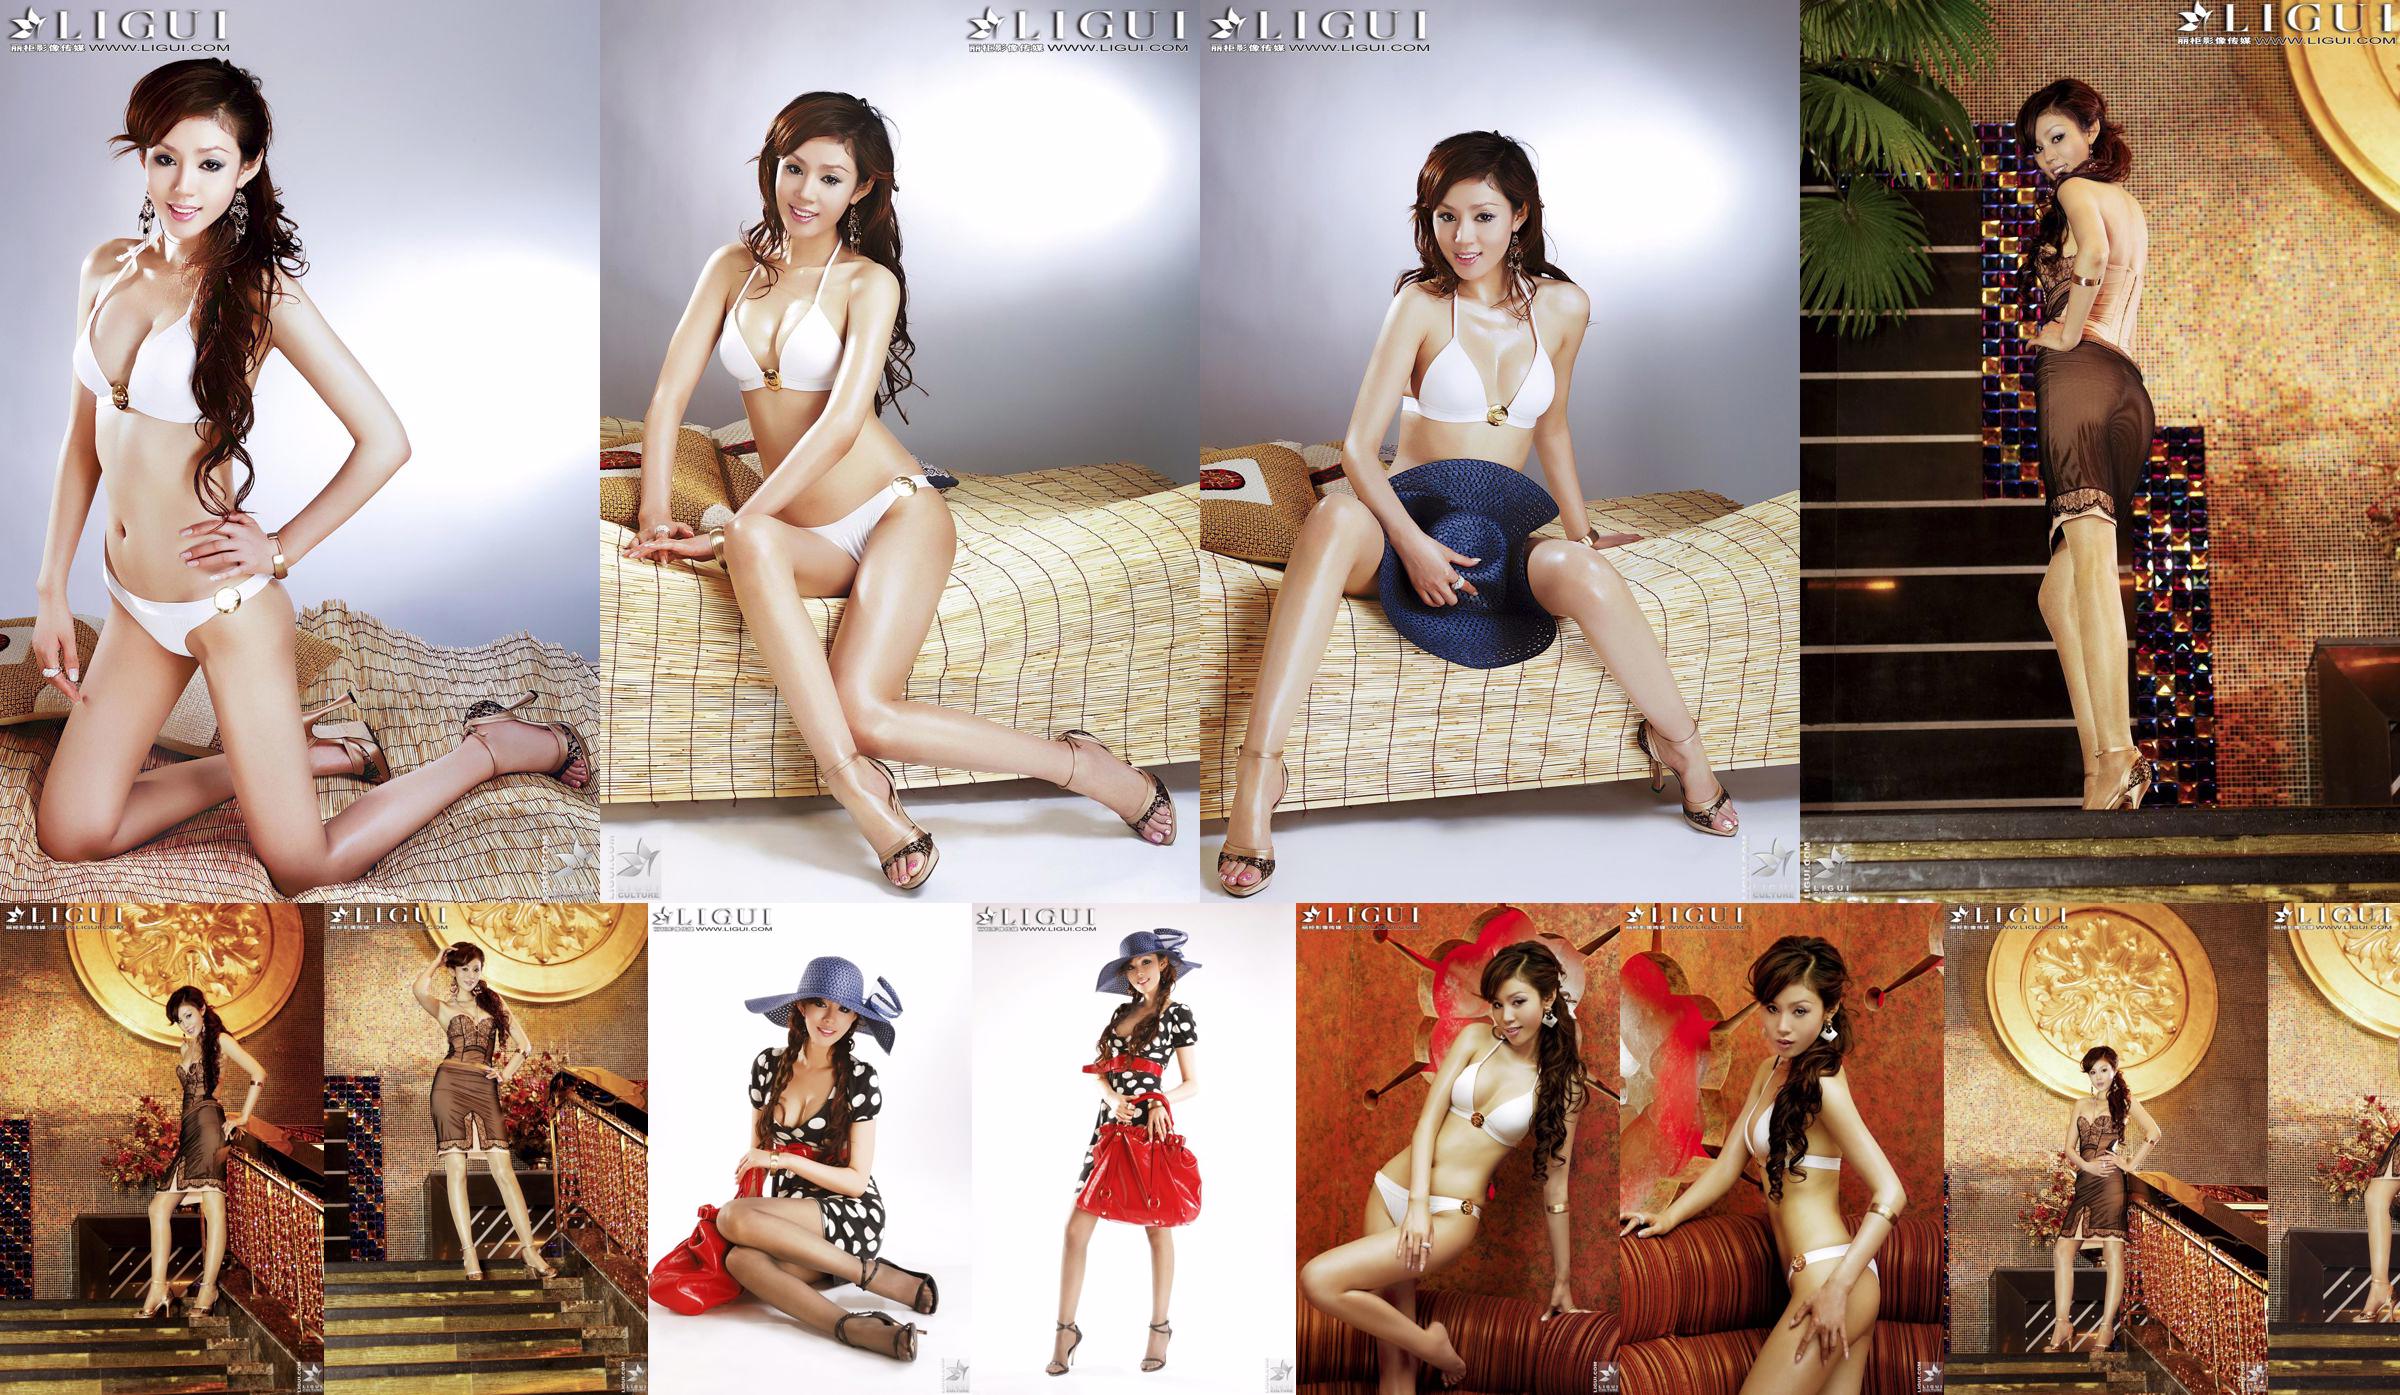 [丽柜LiGui] Model Yao Jinjin's "Bikini + Dress" Beautiful Legs and Silky Feet Photo Picture No.f72836 Page 1